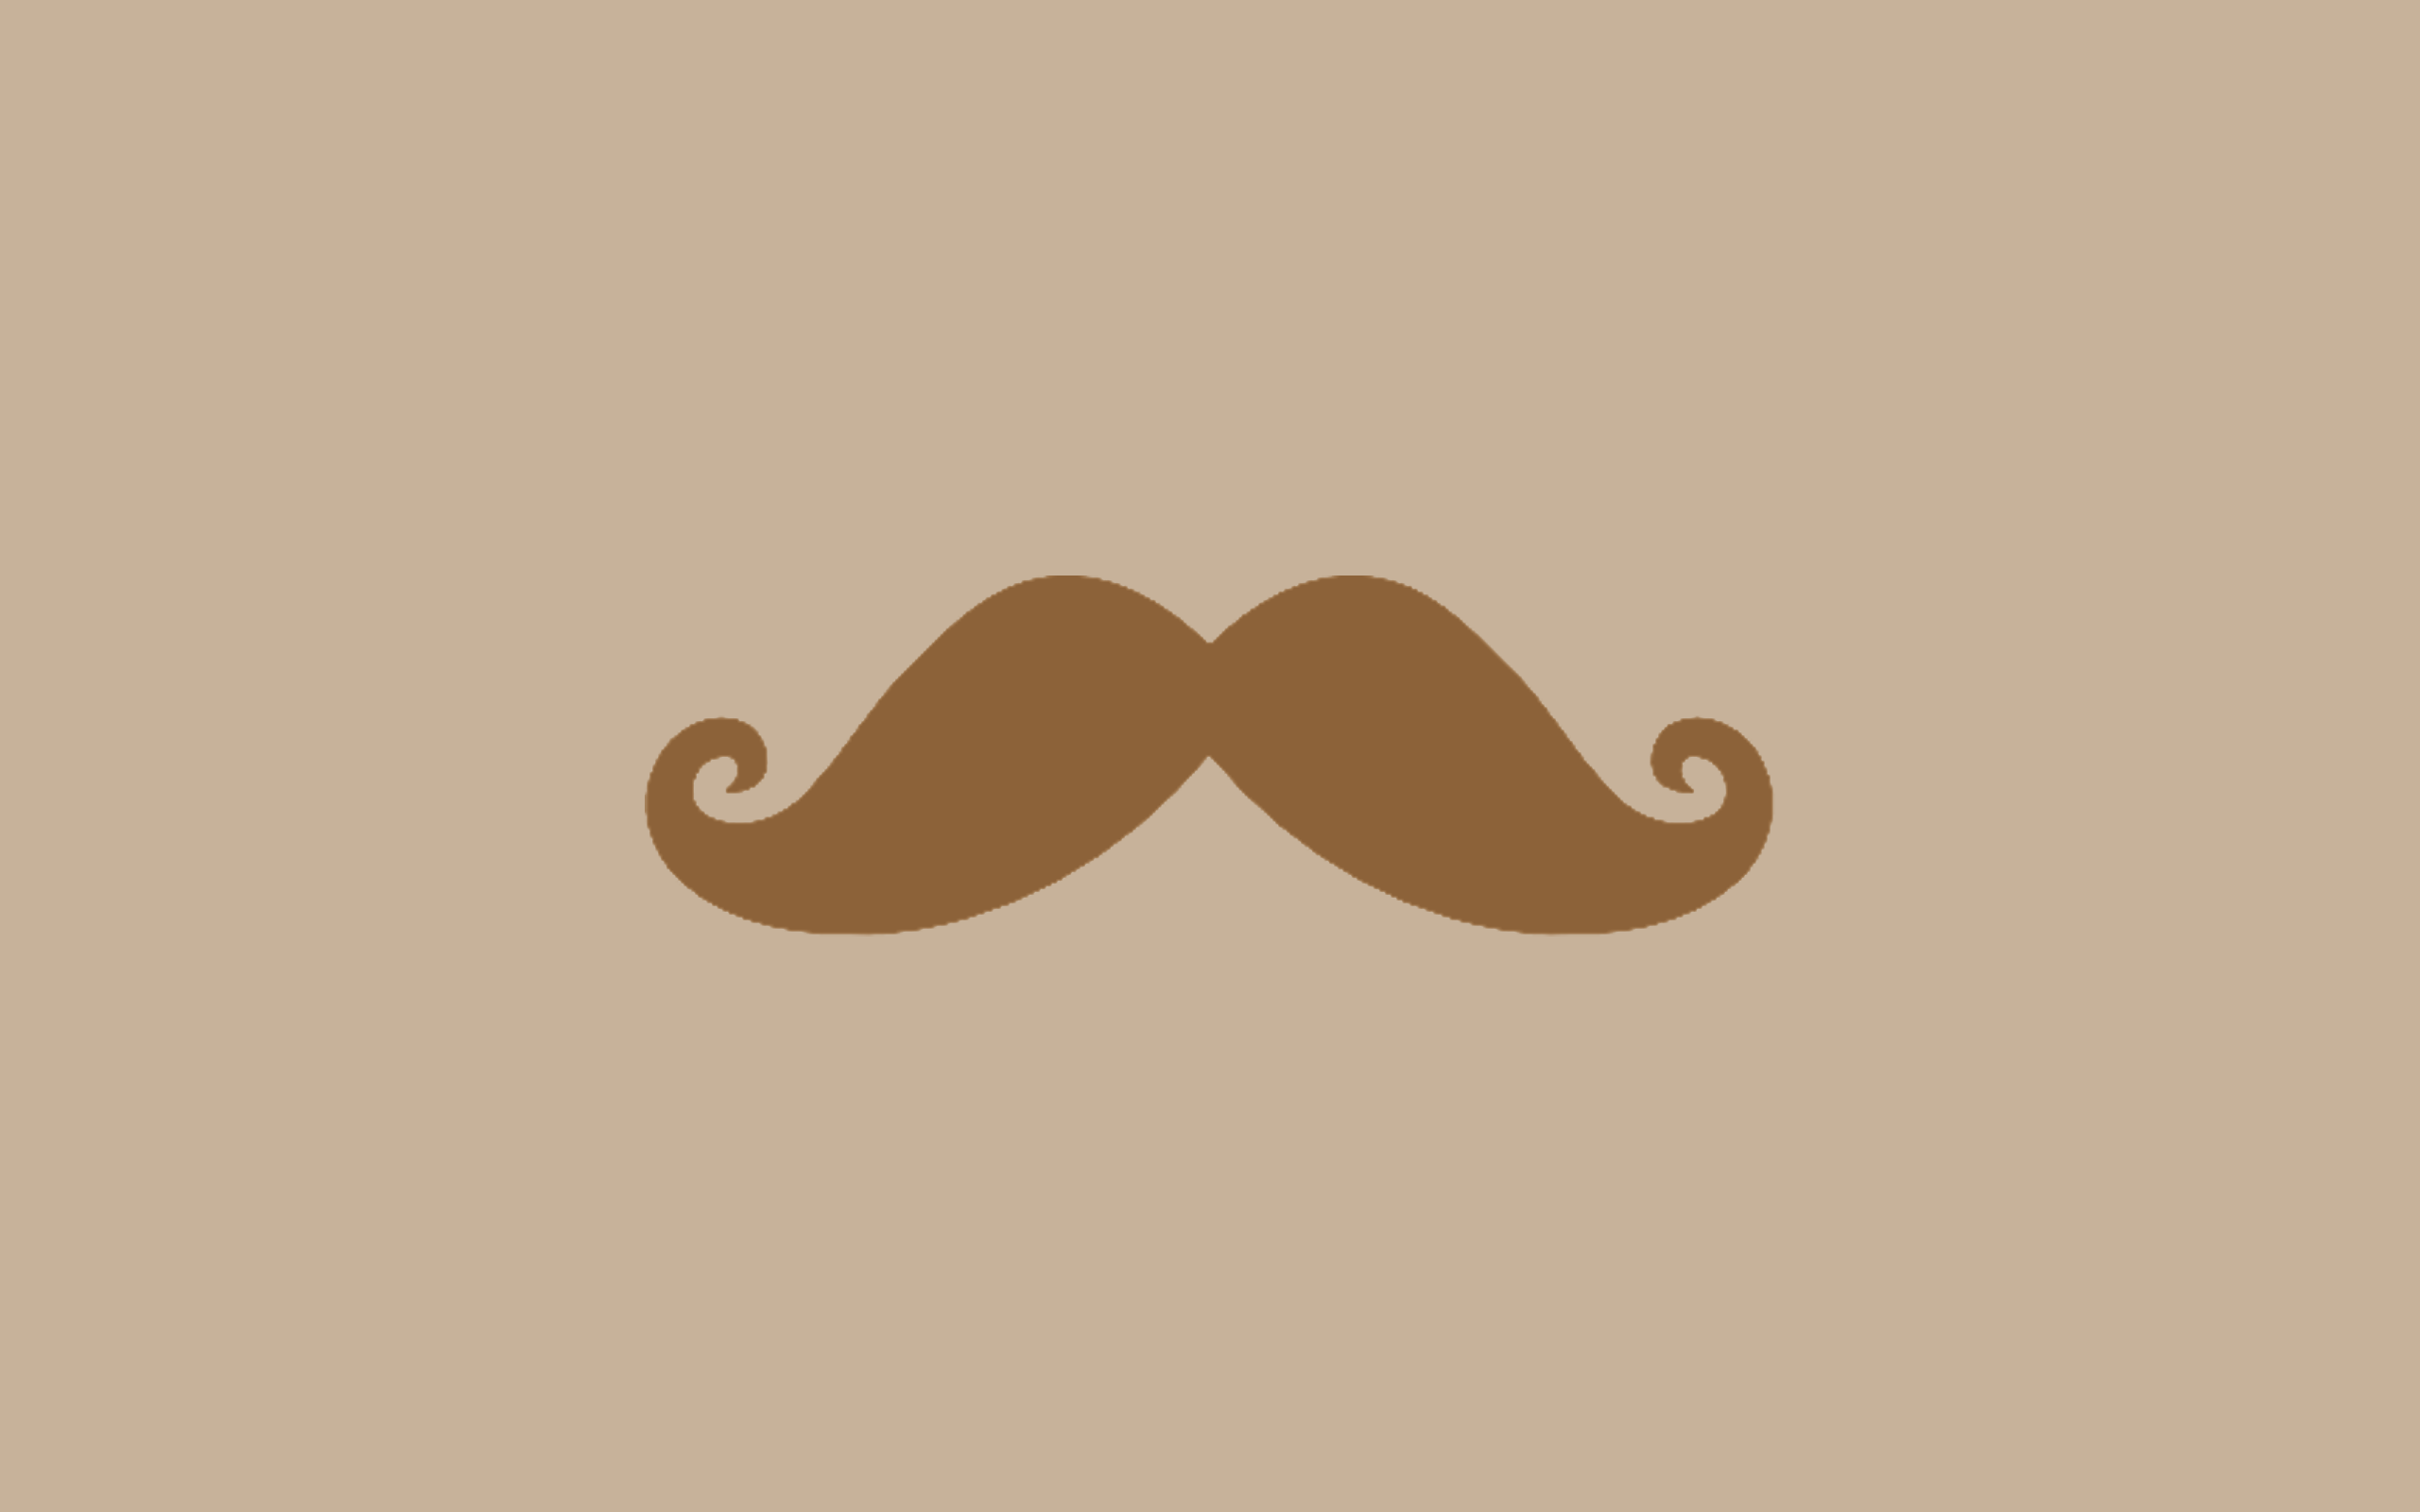 Desktop Mustache HD Wallpaper Image Download